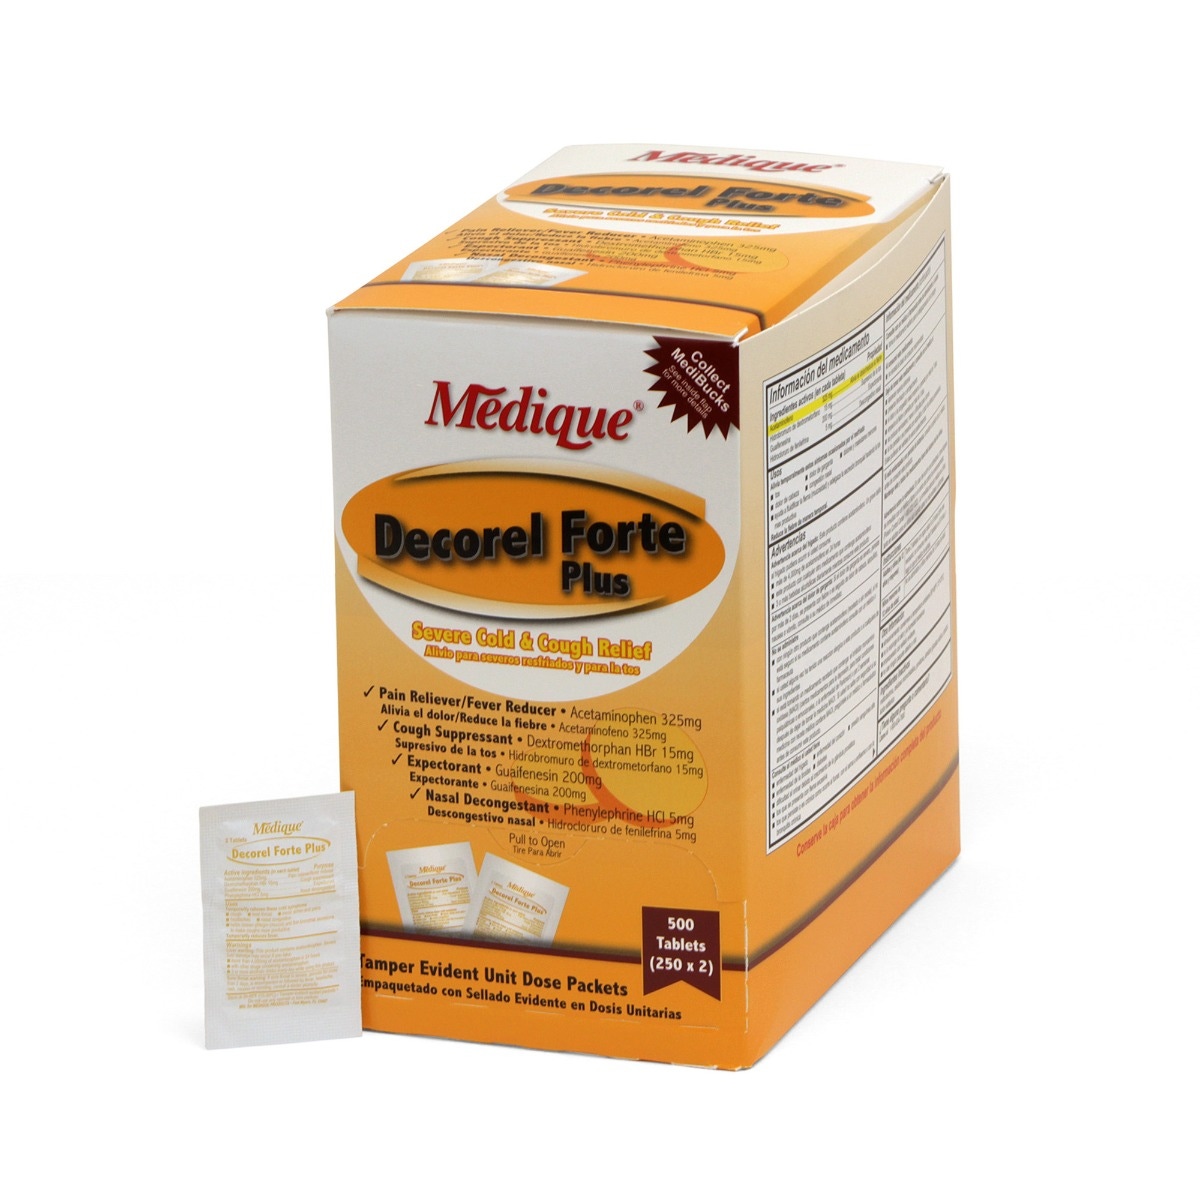 Medique Decorel Forte Plus Severe Cold & Cough Relief